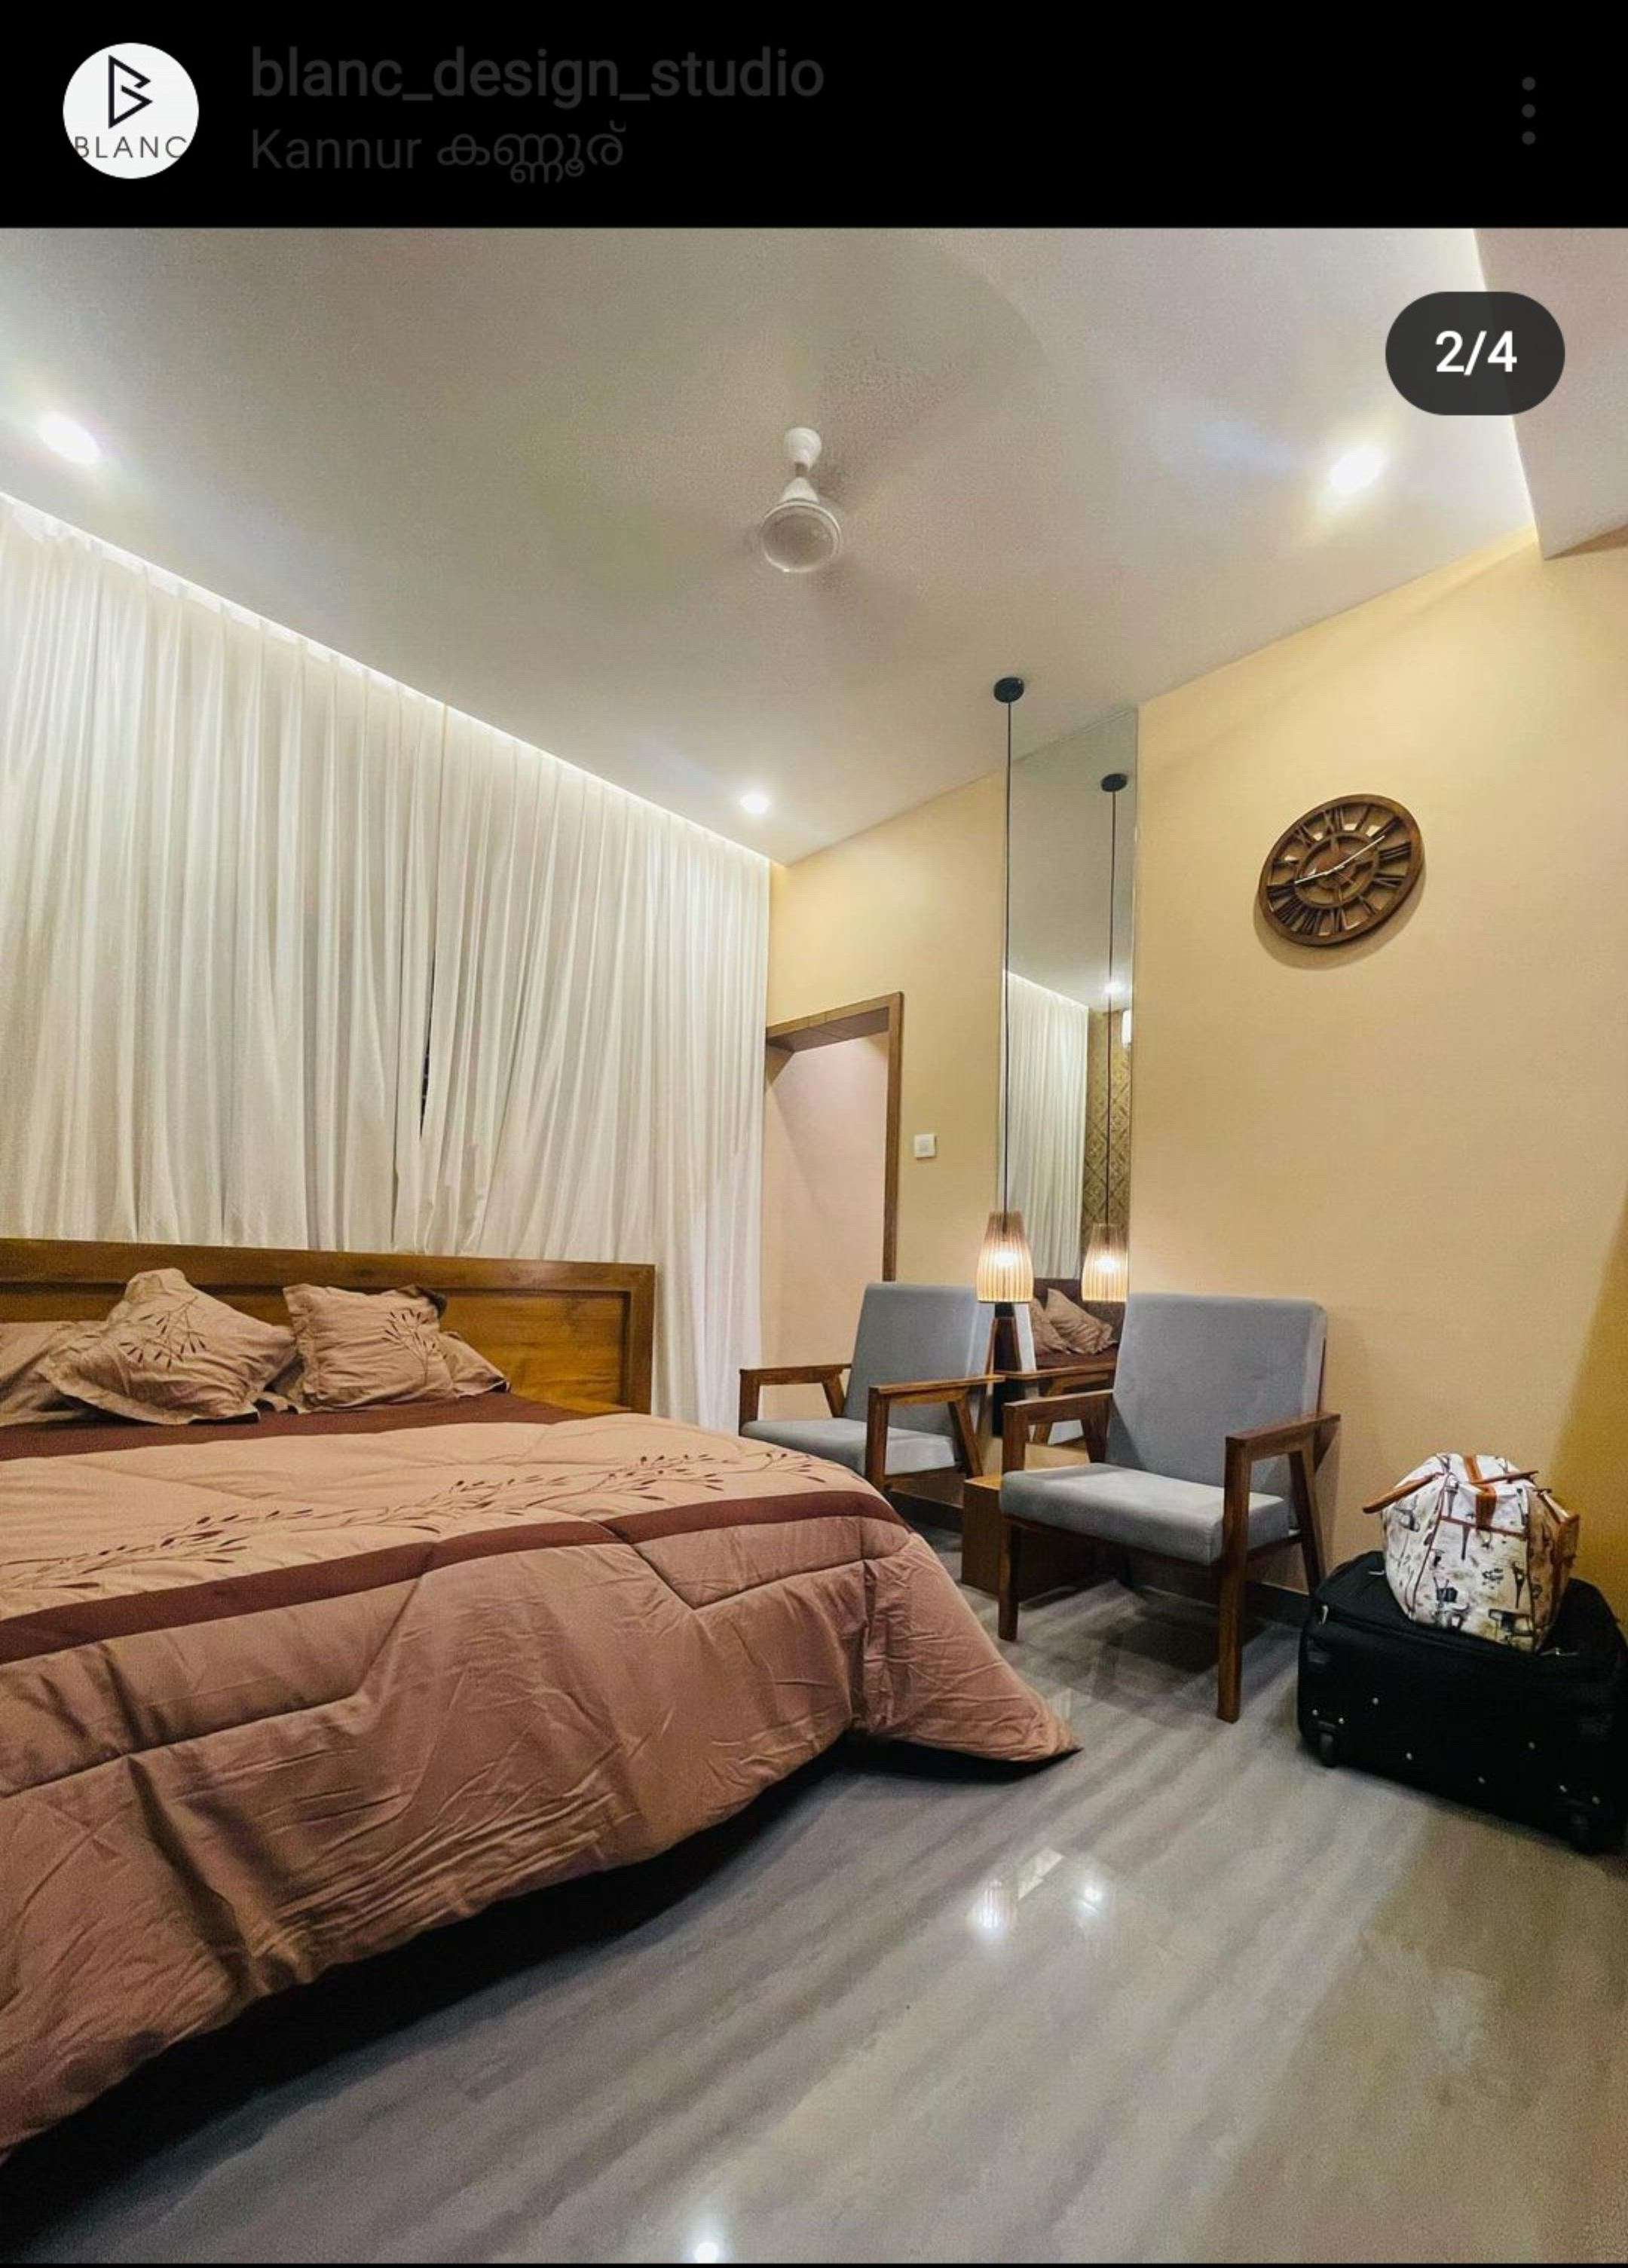 Bedroom Designs by Architect sahad musthafa, Kannur | Kolo